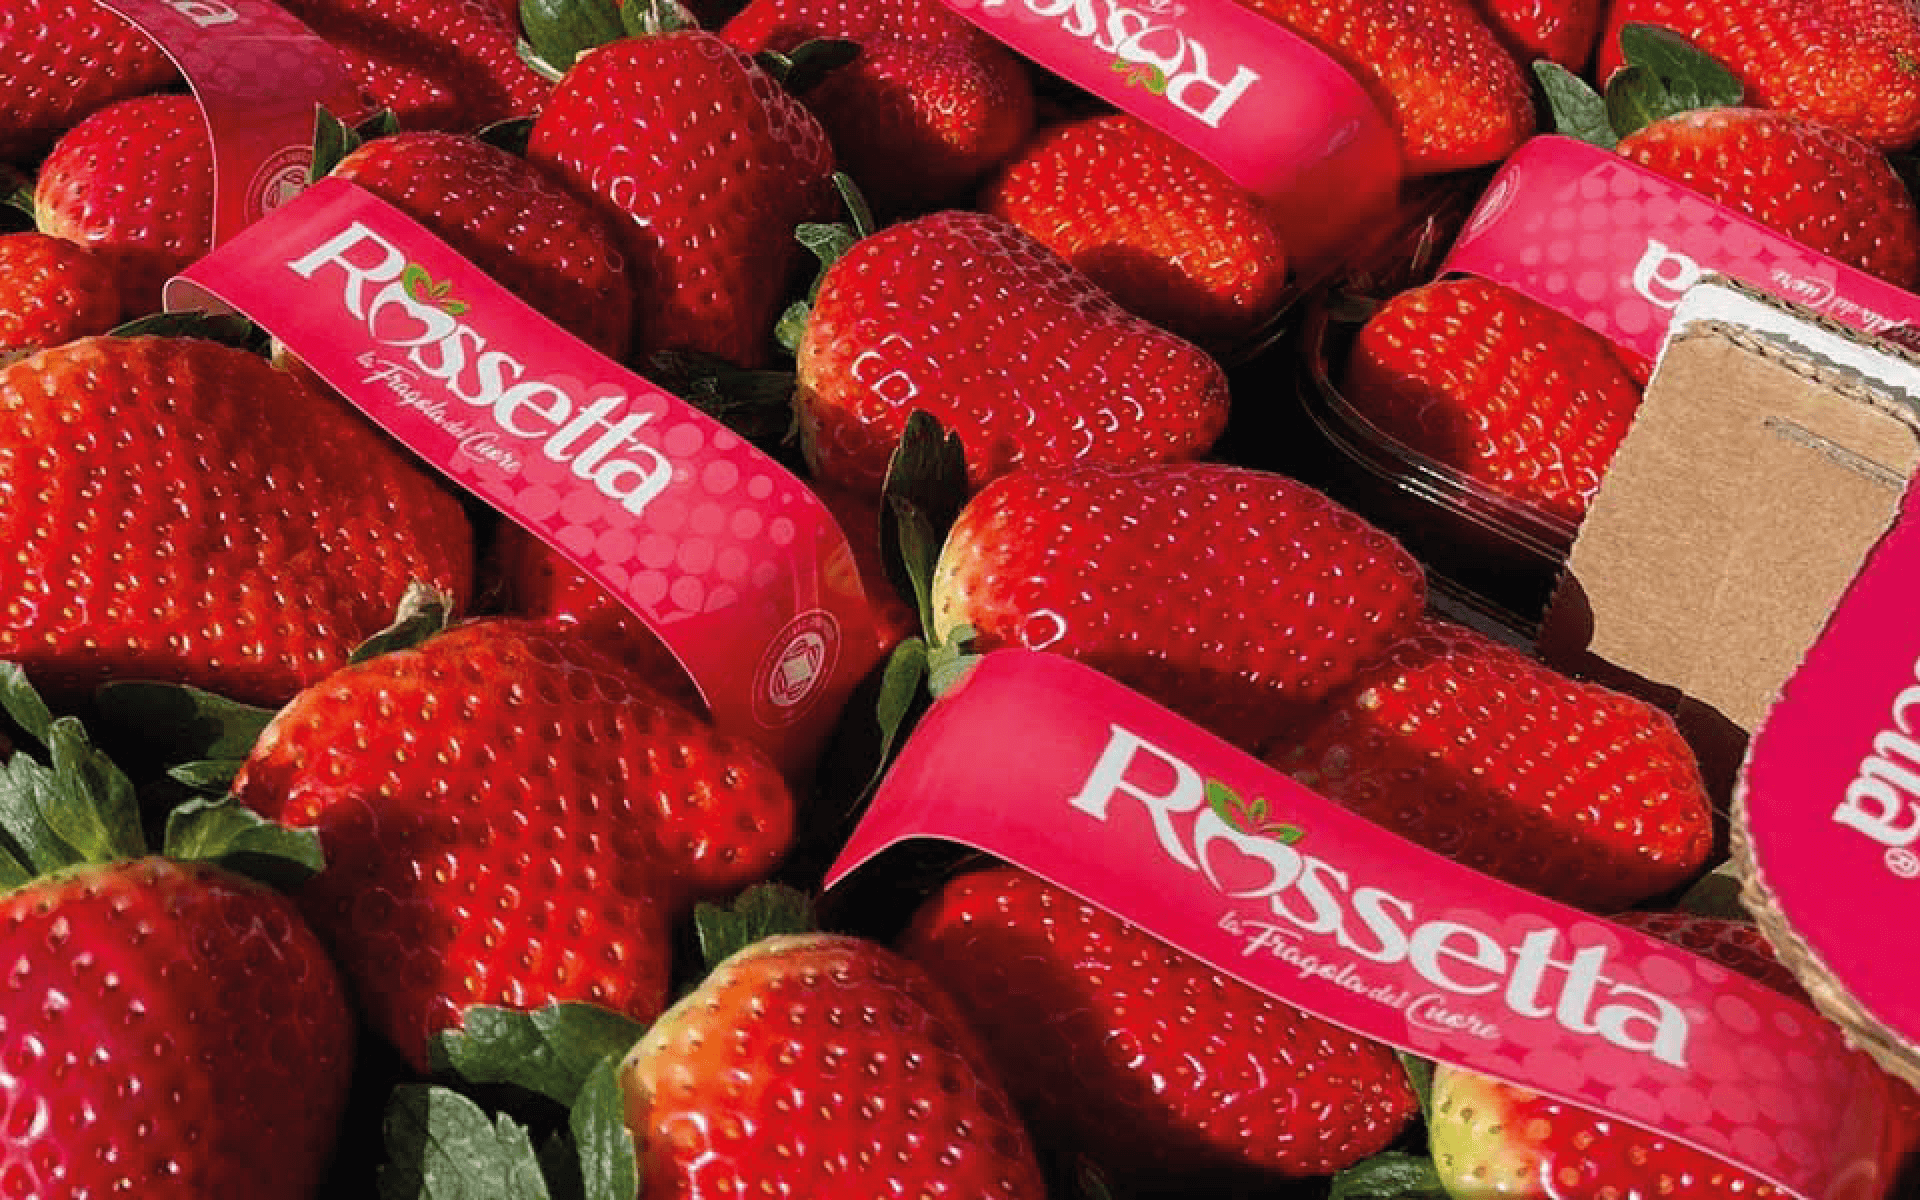 Foto-rossetta-articolo-nsg-italia-fruit-bergamo